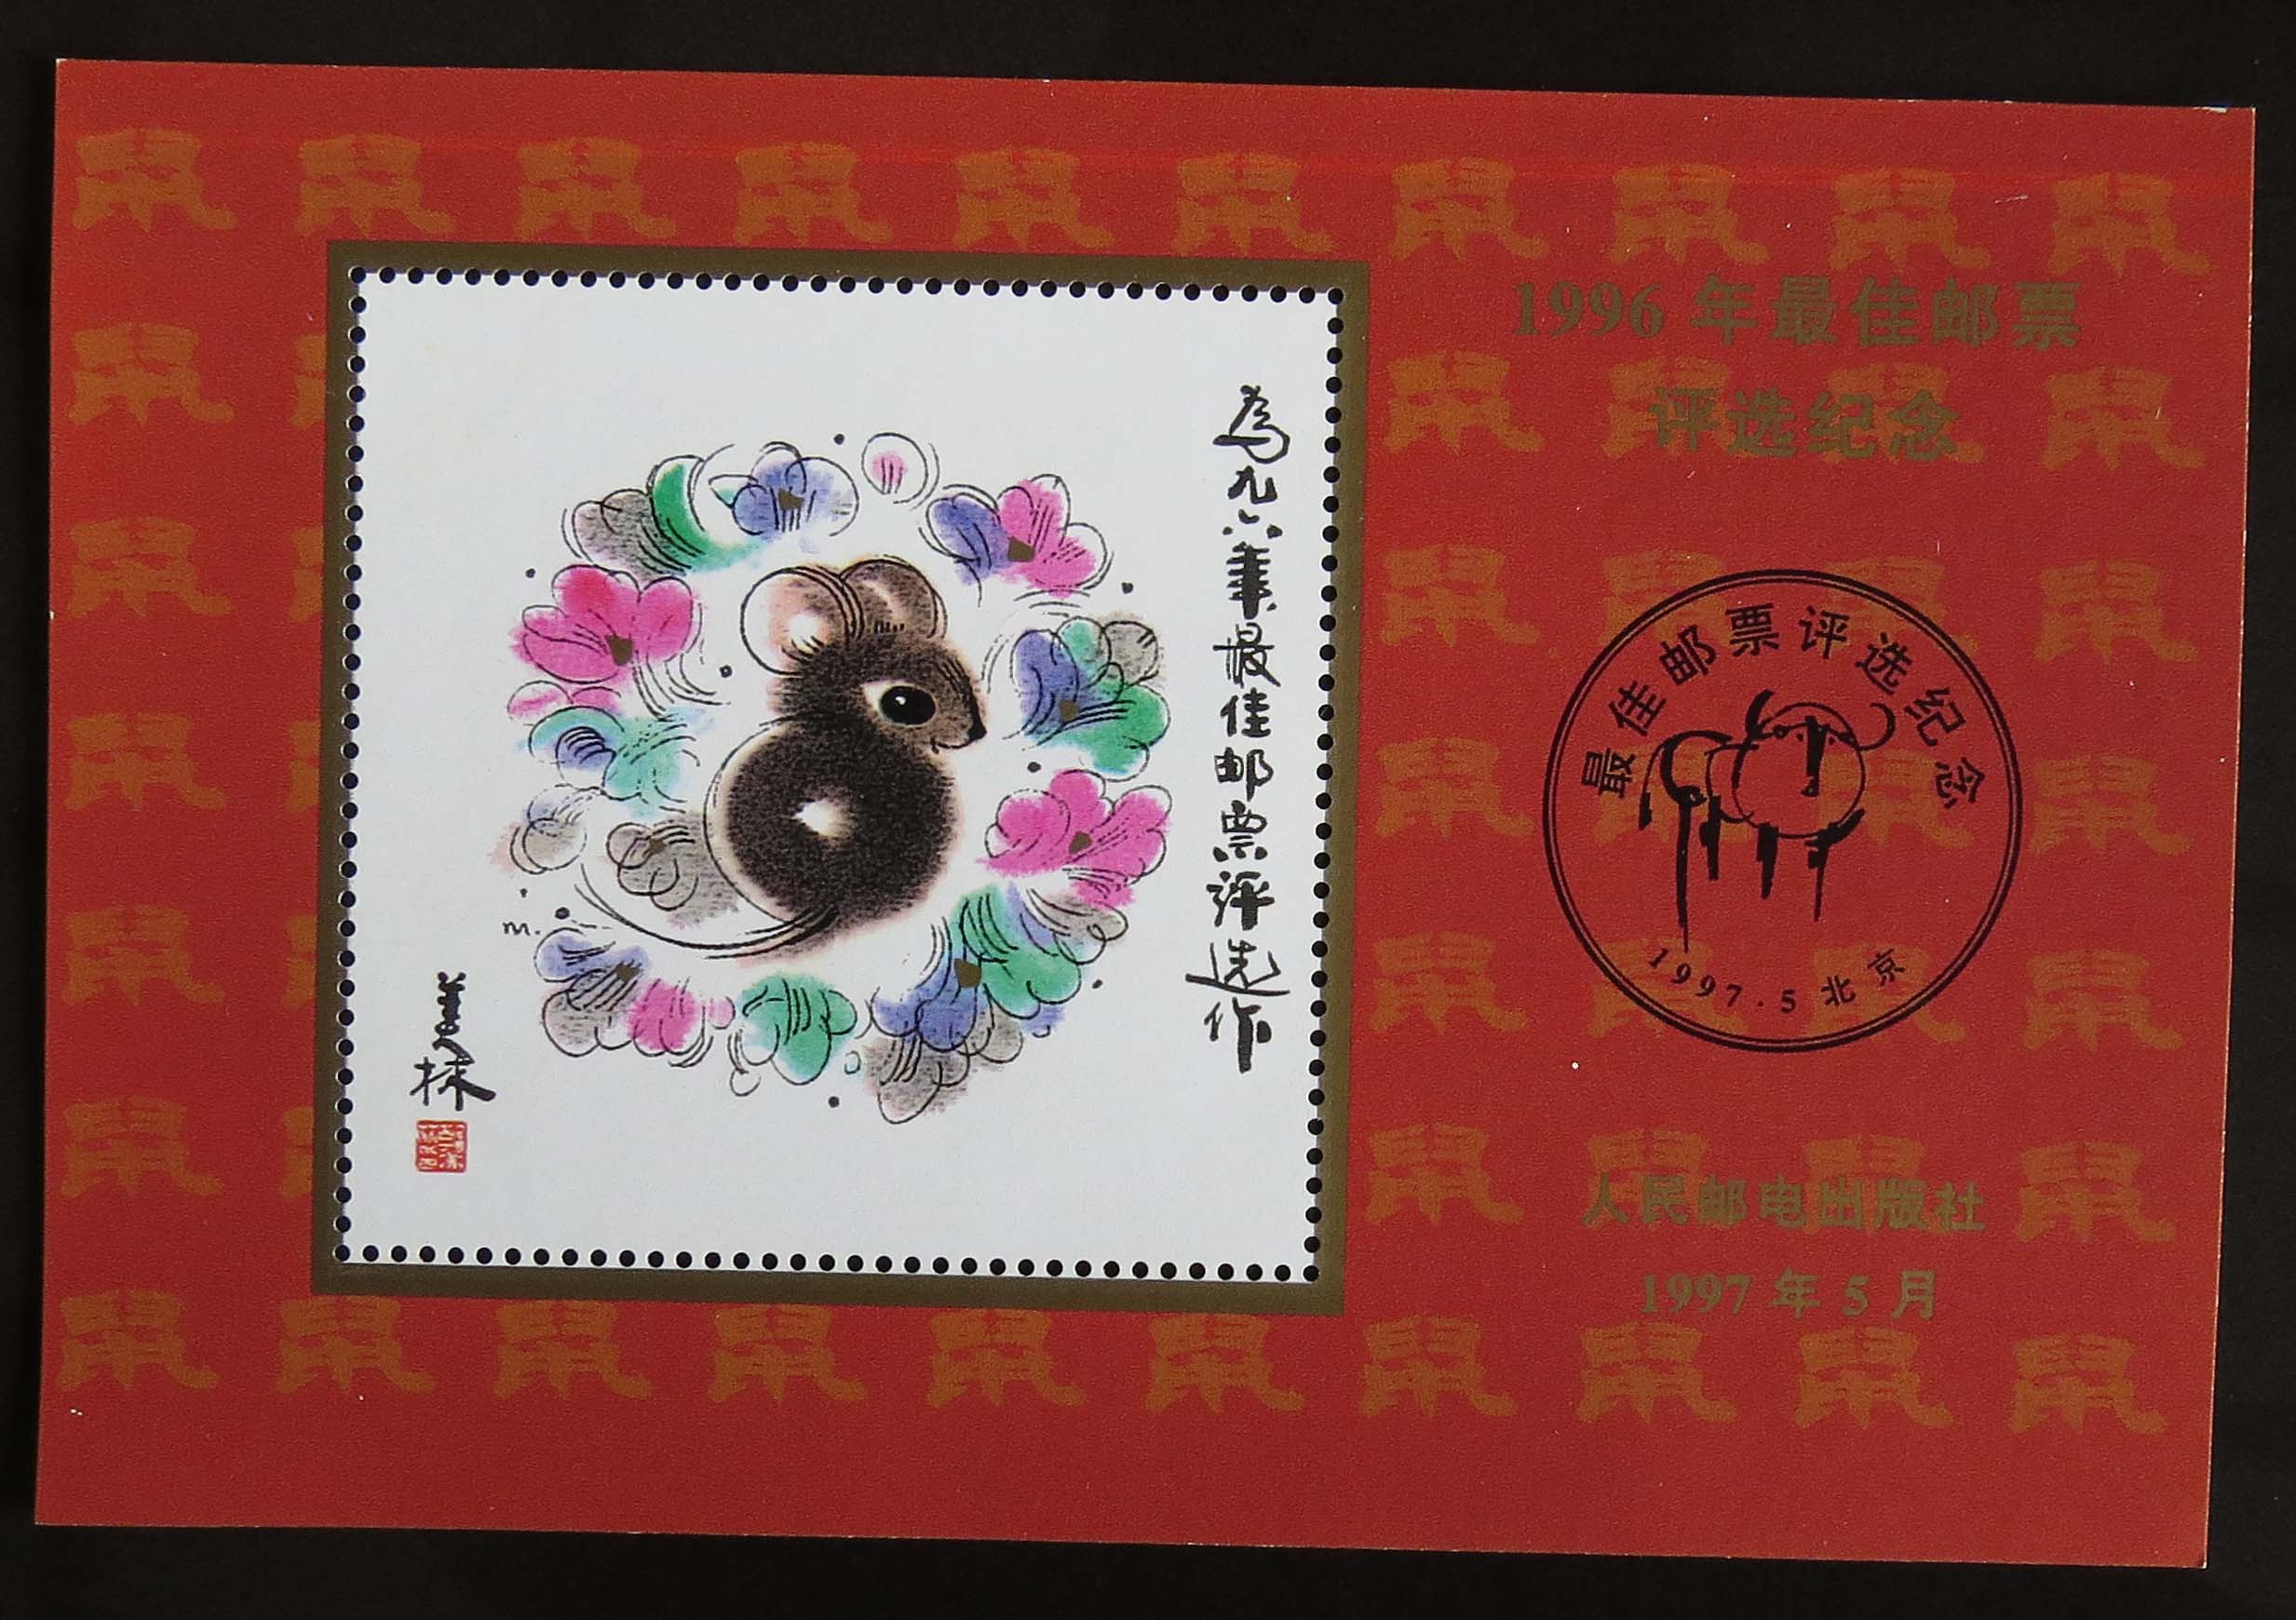 【长征邮社】1996年最佳邮票评选纪念张 正品保障 推荐 热销